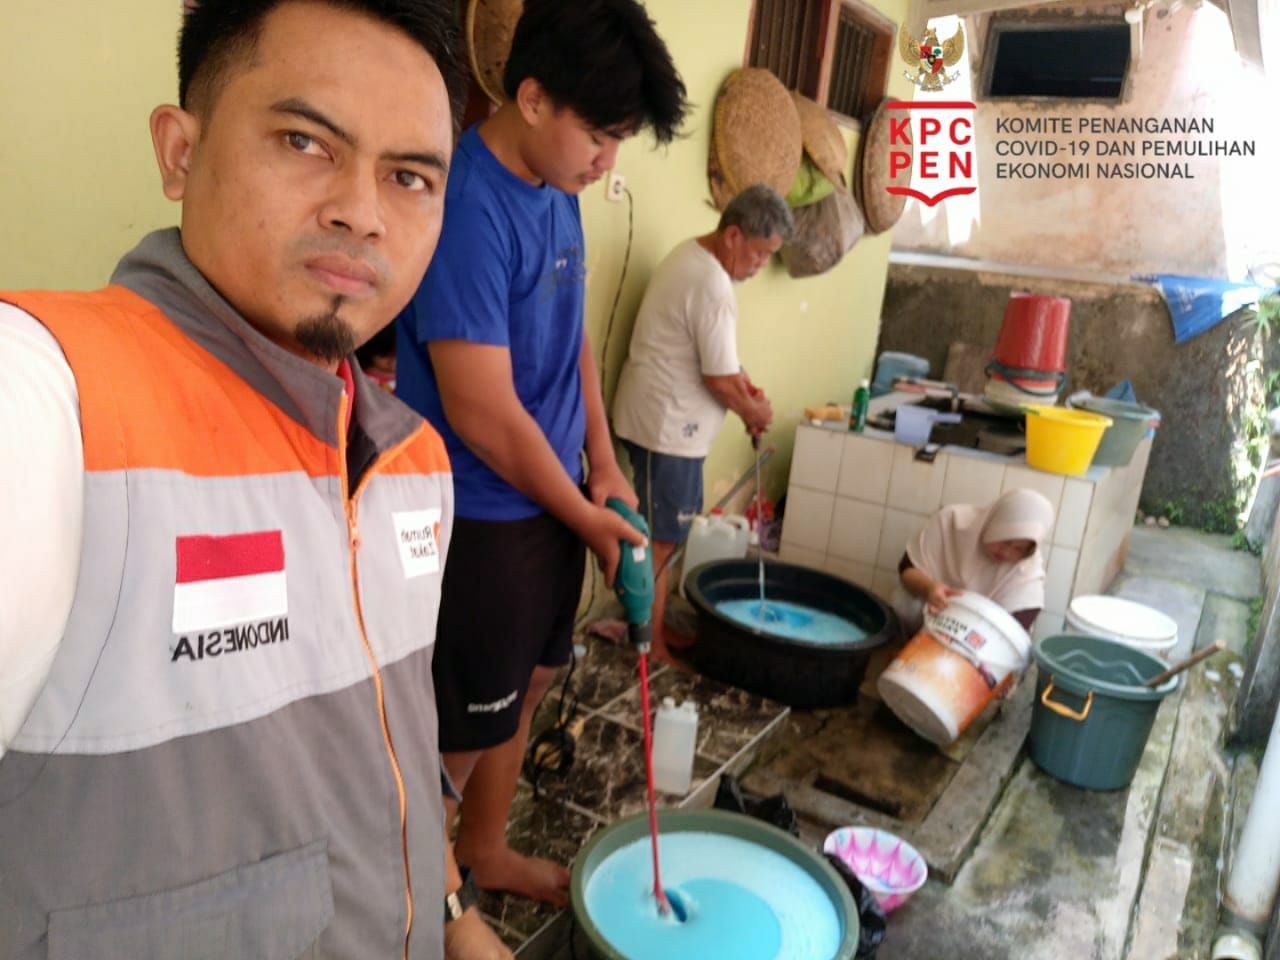 Anggota Satgas Covid-19 sedang memperlihatkan proses produksi pembuatan sabun cari dan detergent hasil usaha warga Cisolok Sukabumi